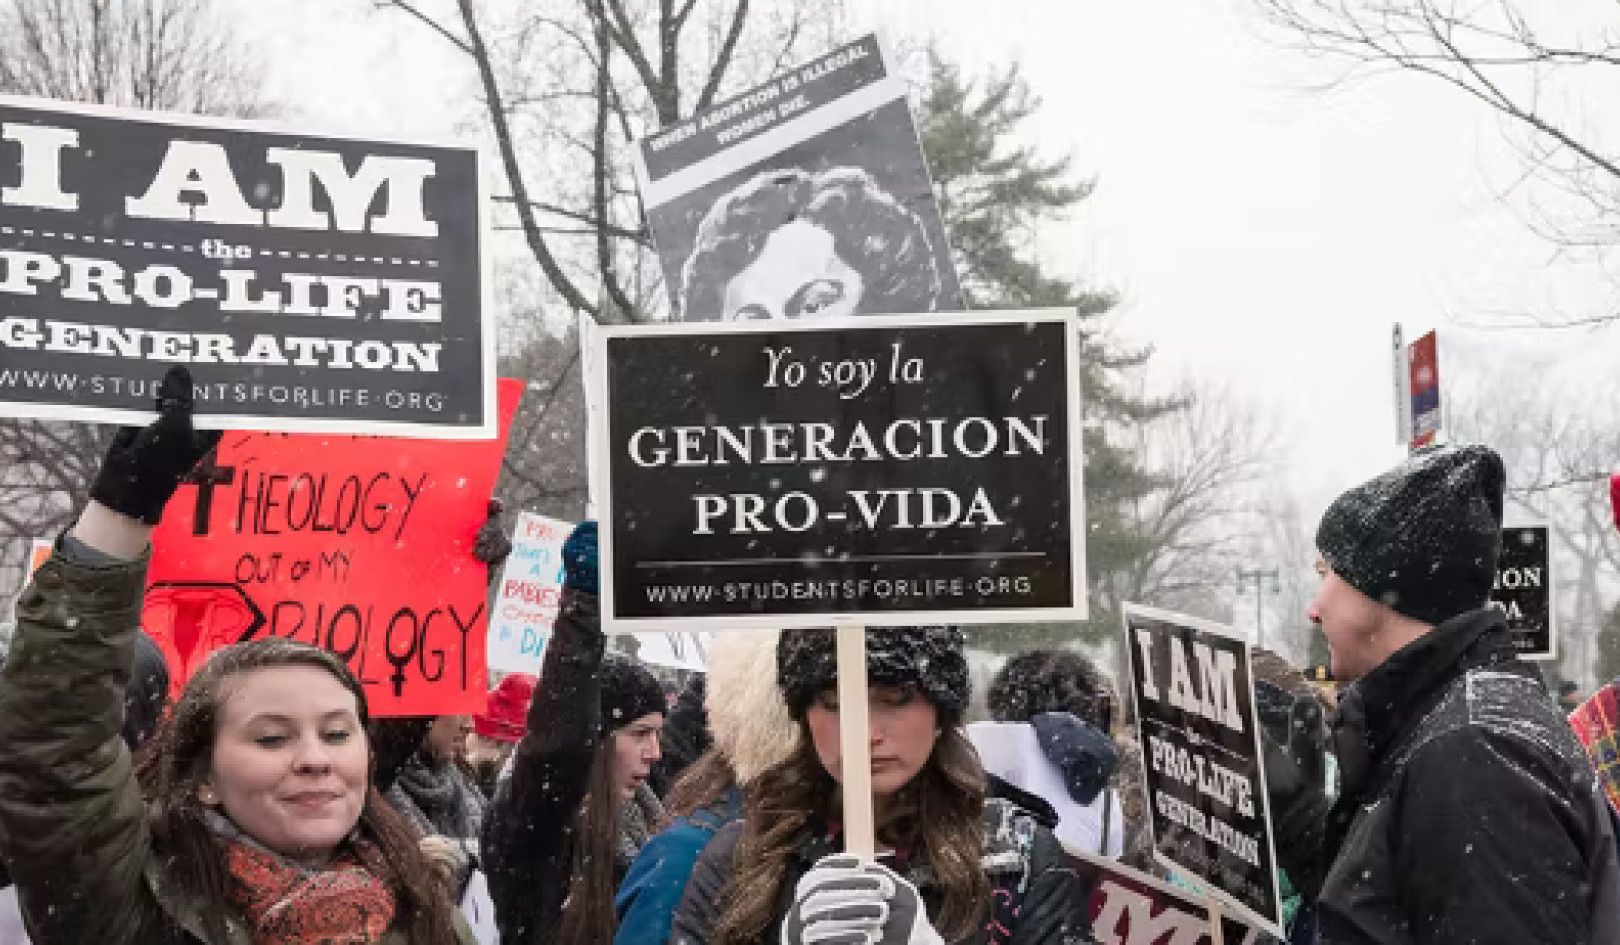 Cosa guida davvero le convinzioni contro l'aborto?